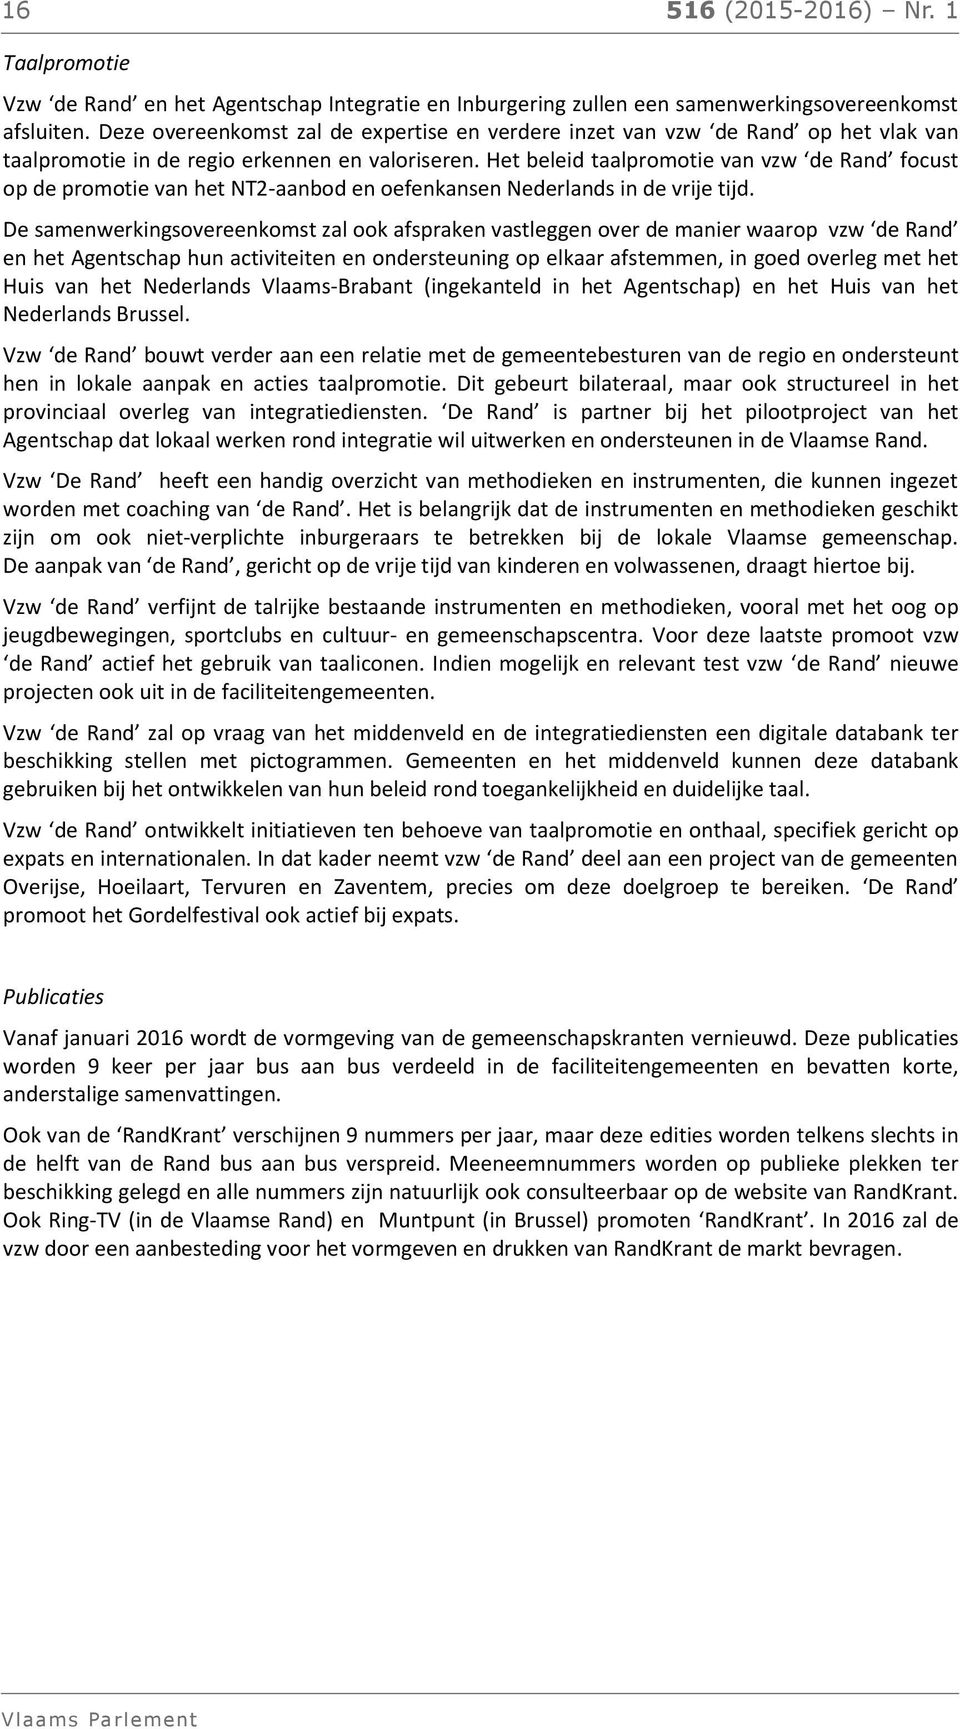 Het beleid taalpromotie van vzw de Rand focust op de promotie van het NT2-aanbod en oefenkansen Nederlands in de vrije tijd.